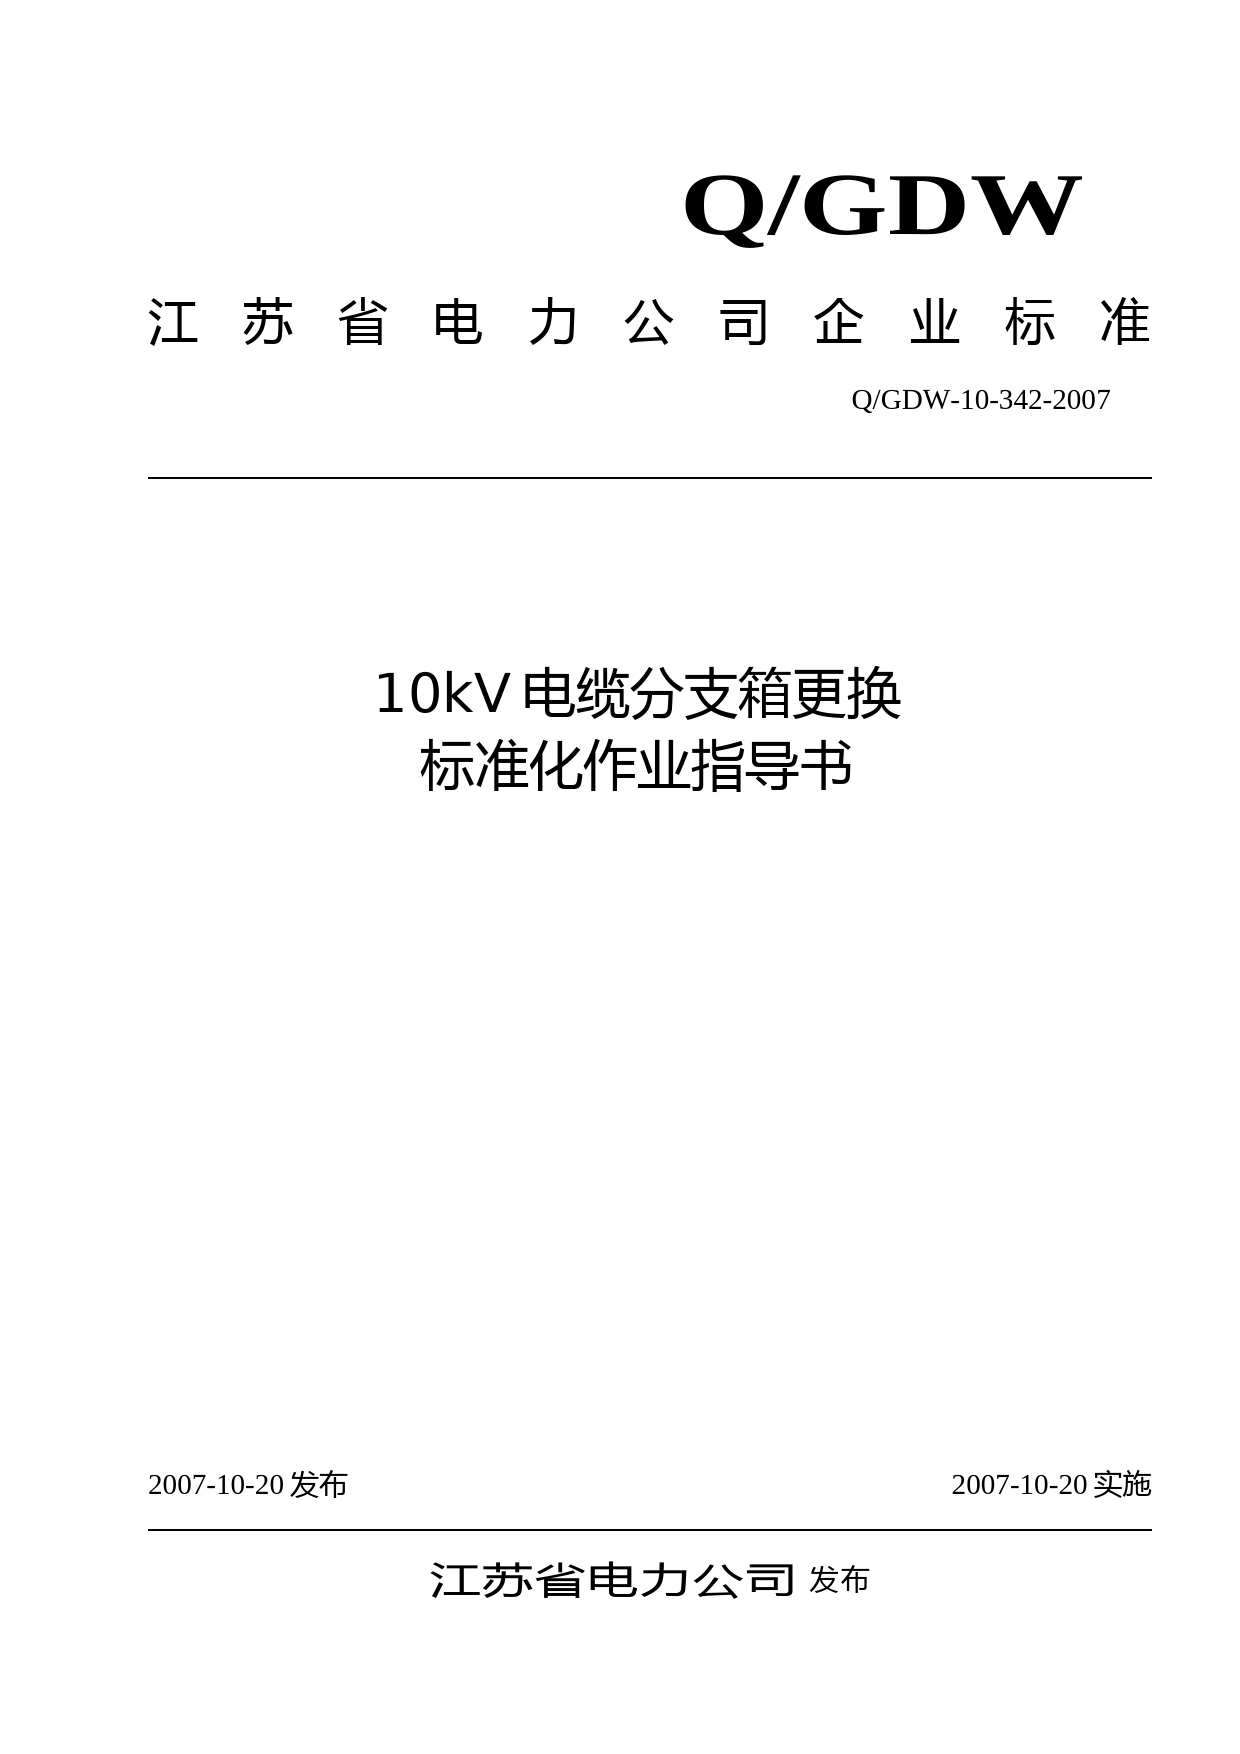 10kV电缆分支箱更换标准化作业指导书